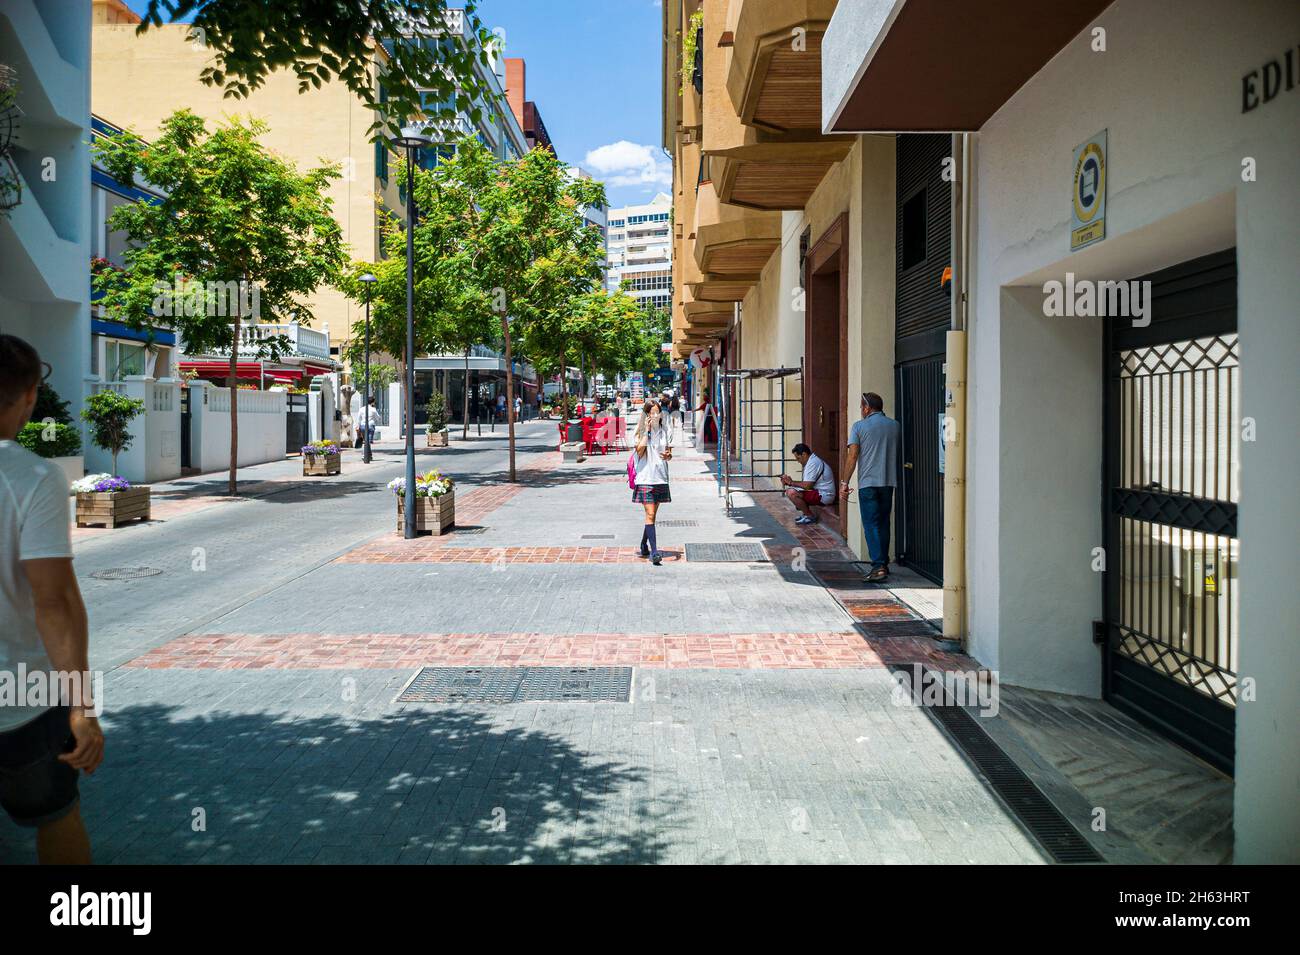 marbella,espagne: photographie de rue dans la vieille ville avec l'architecture espagnole à marbella,costa del sol,andalousie,espagne,europe Banque D'Images